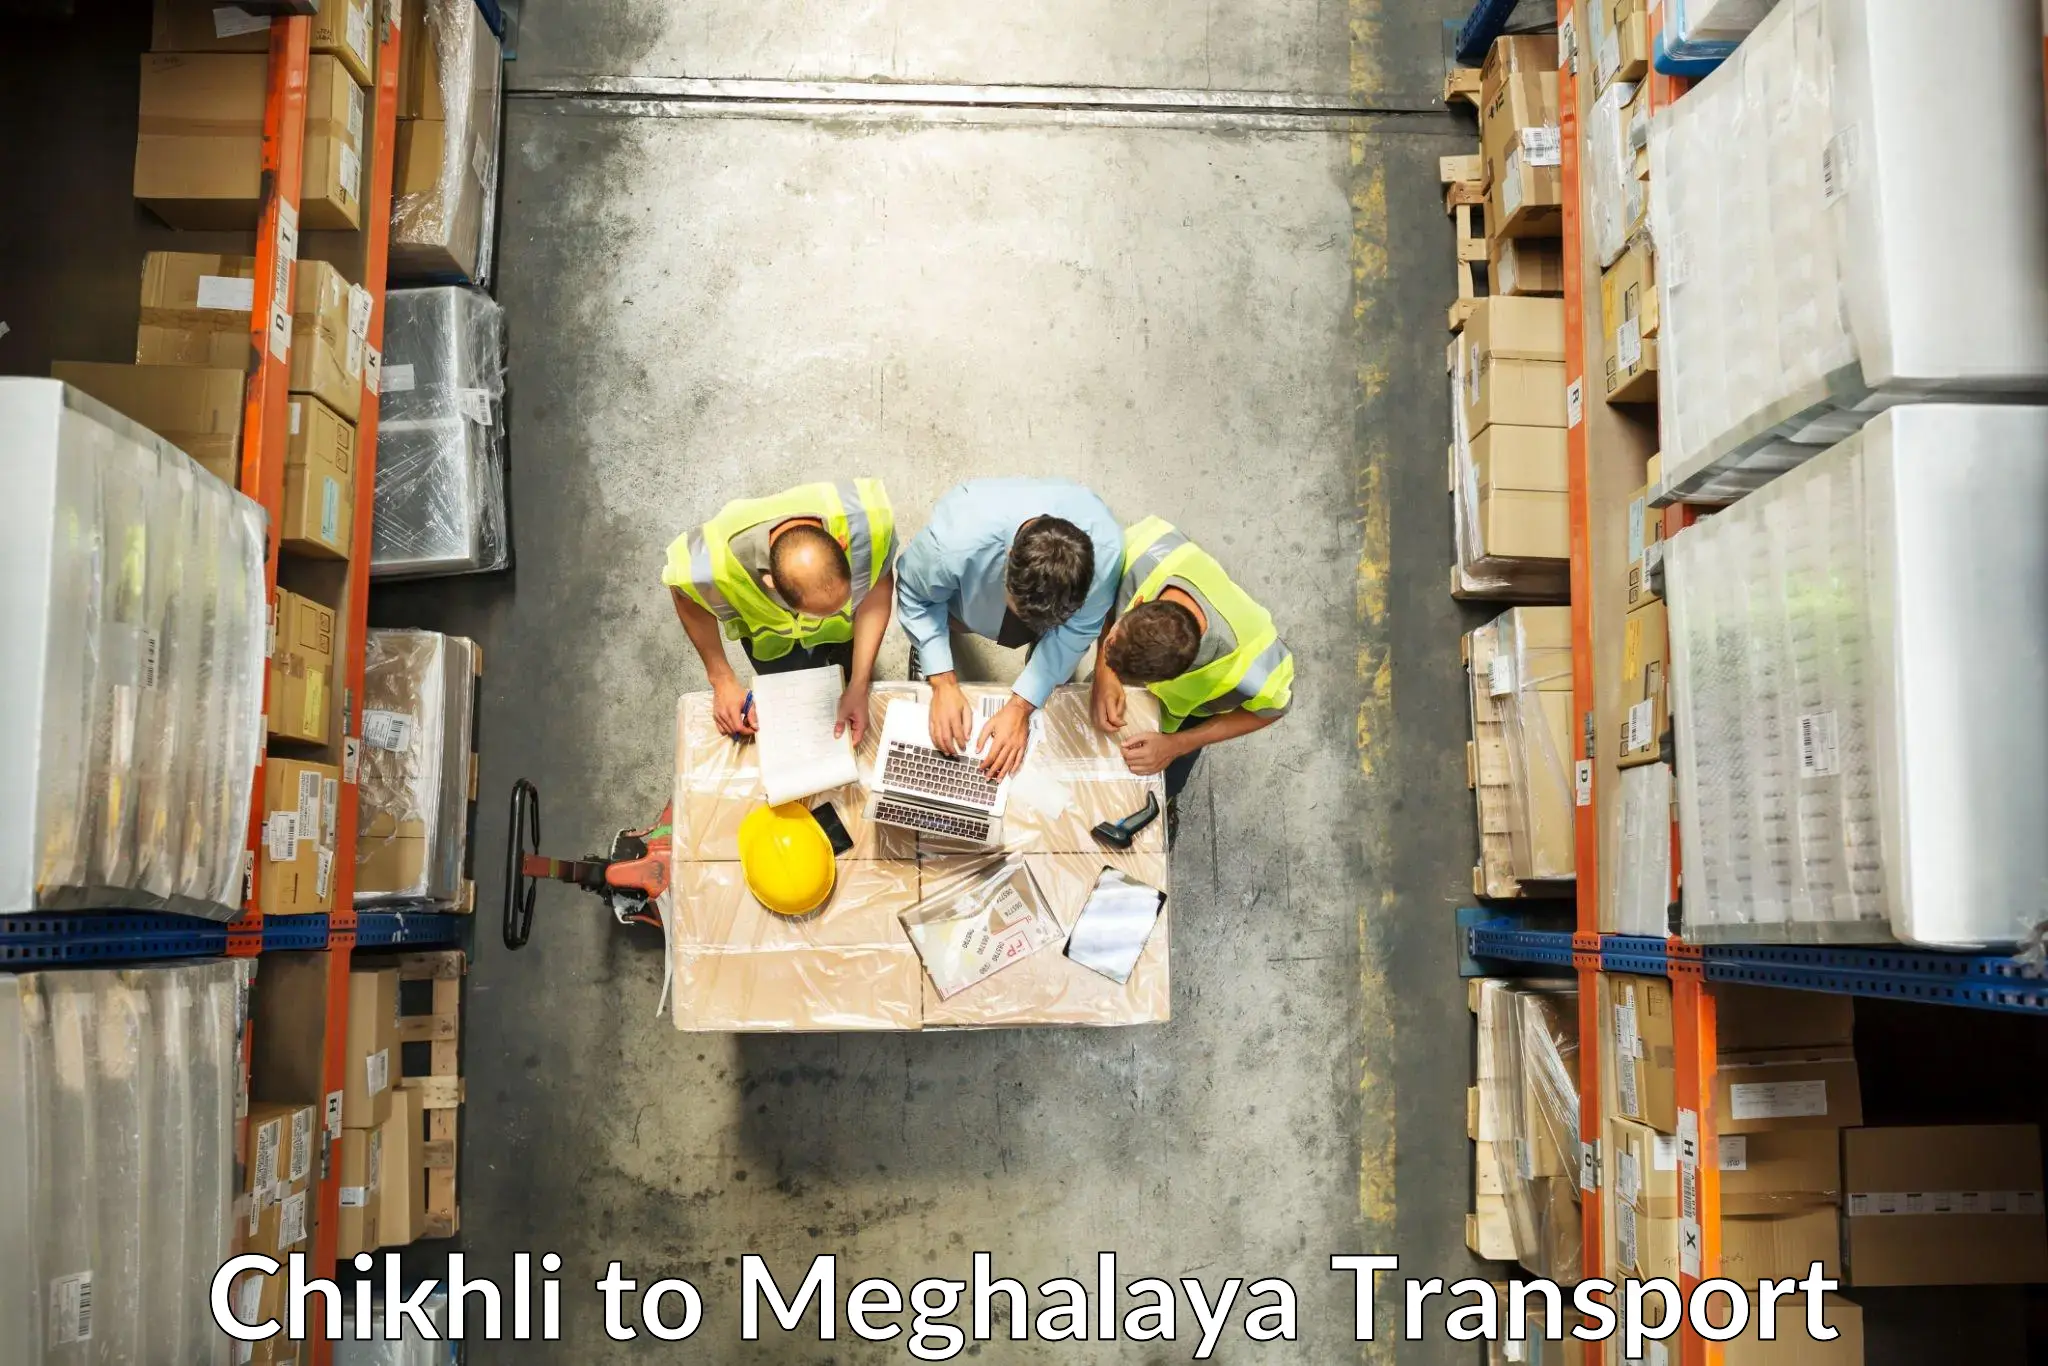 Nearest transport service Chikhli to NIT Meghalaya